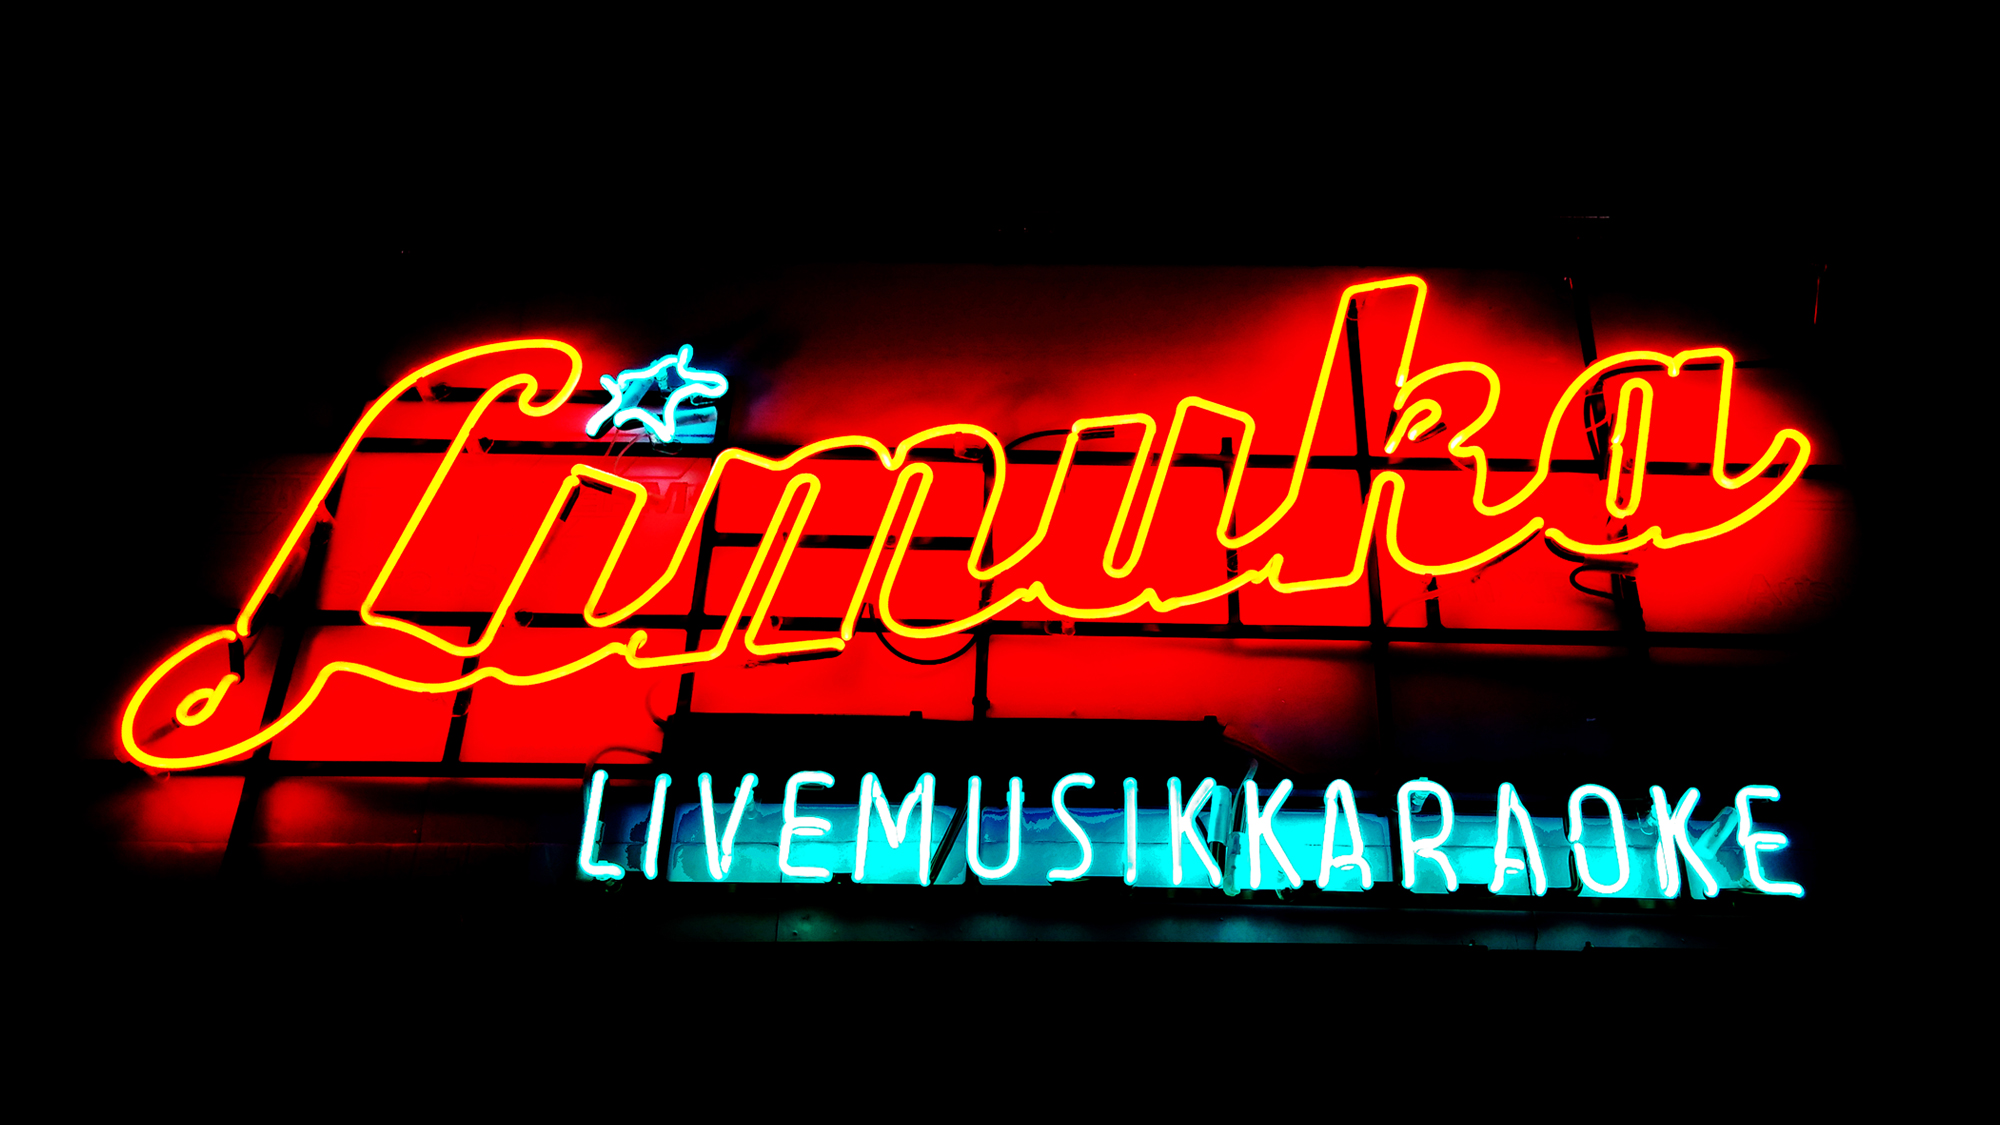 Limuka Live Musik Karaoke, Wien